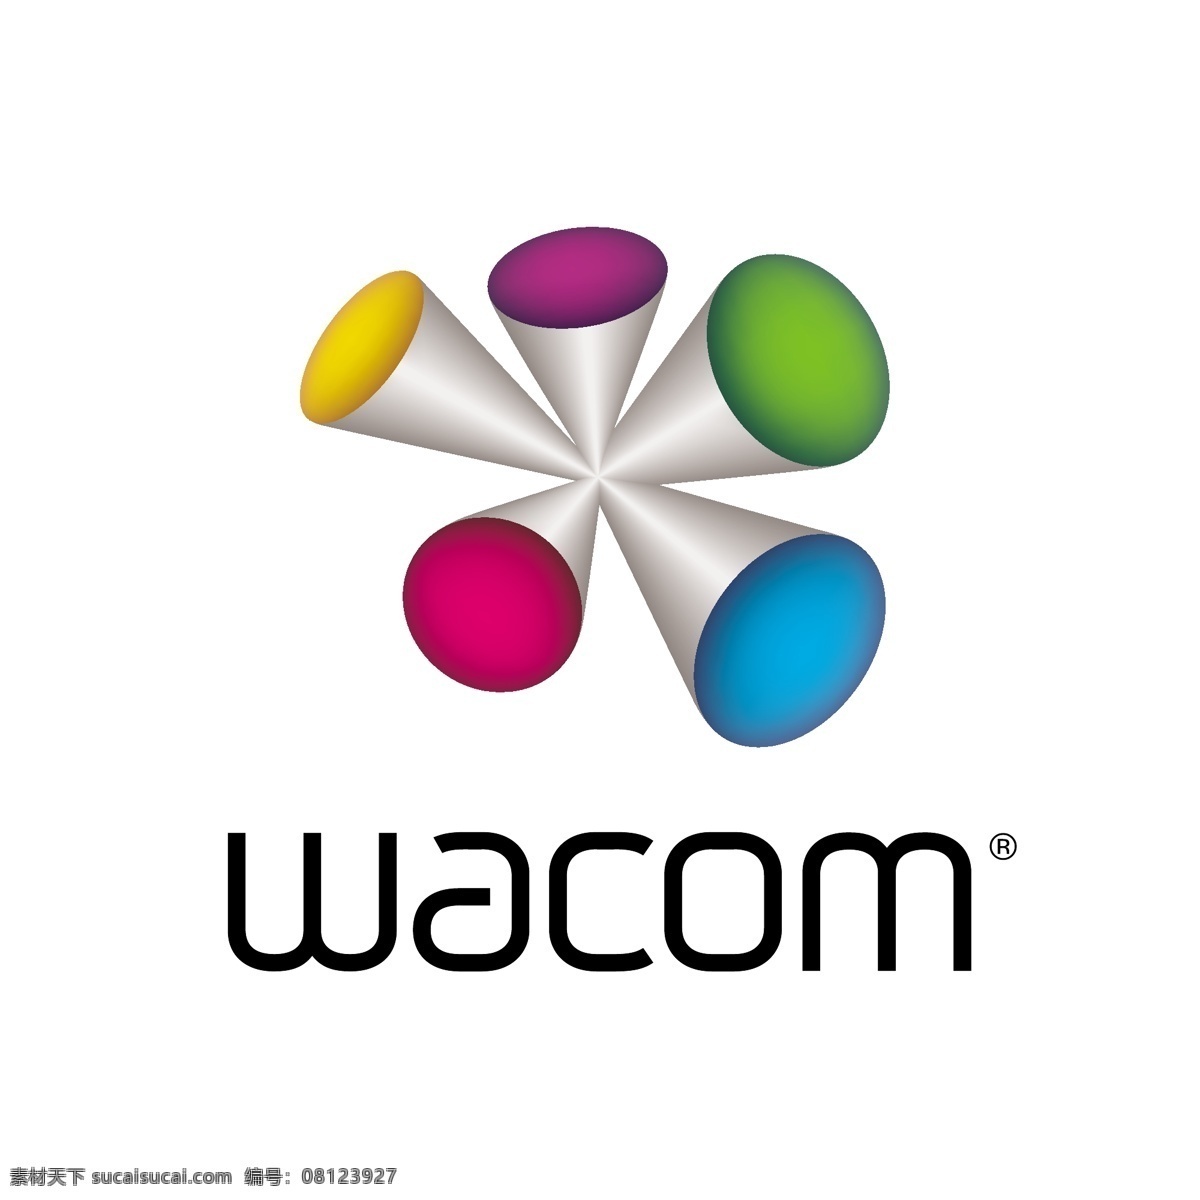 wacom 非凡 logo 标志 图标 标识 手写板 绘图板 感压板 感压笔 手绘 企业 标识标志图标 矢量